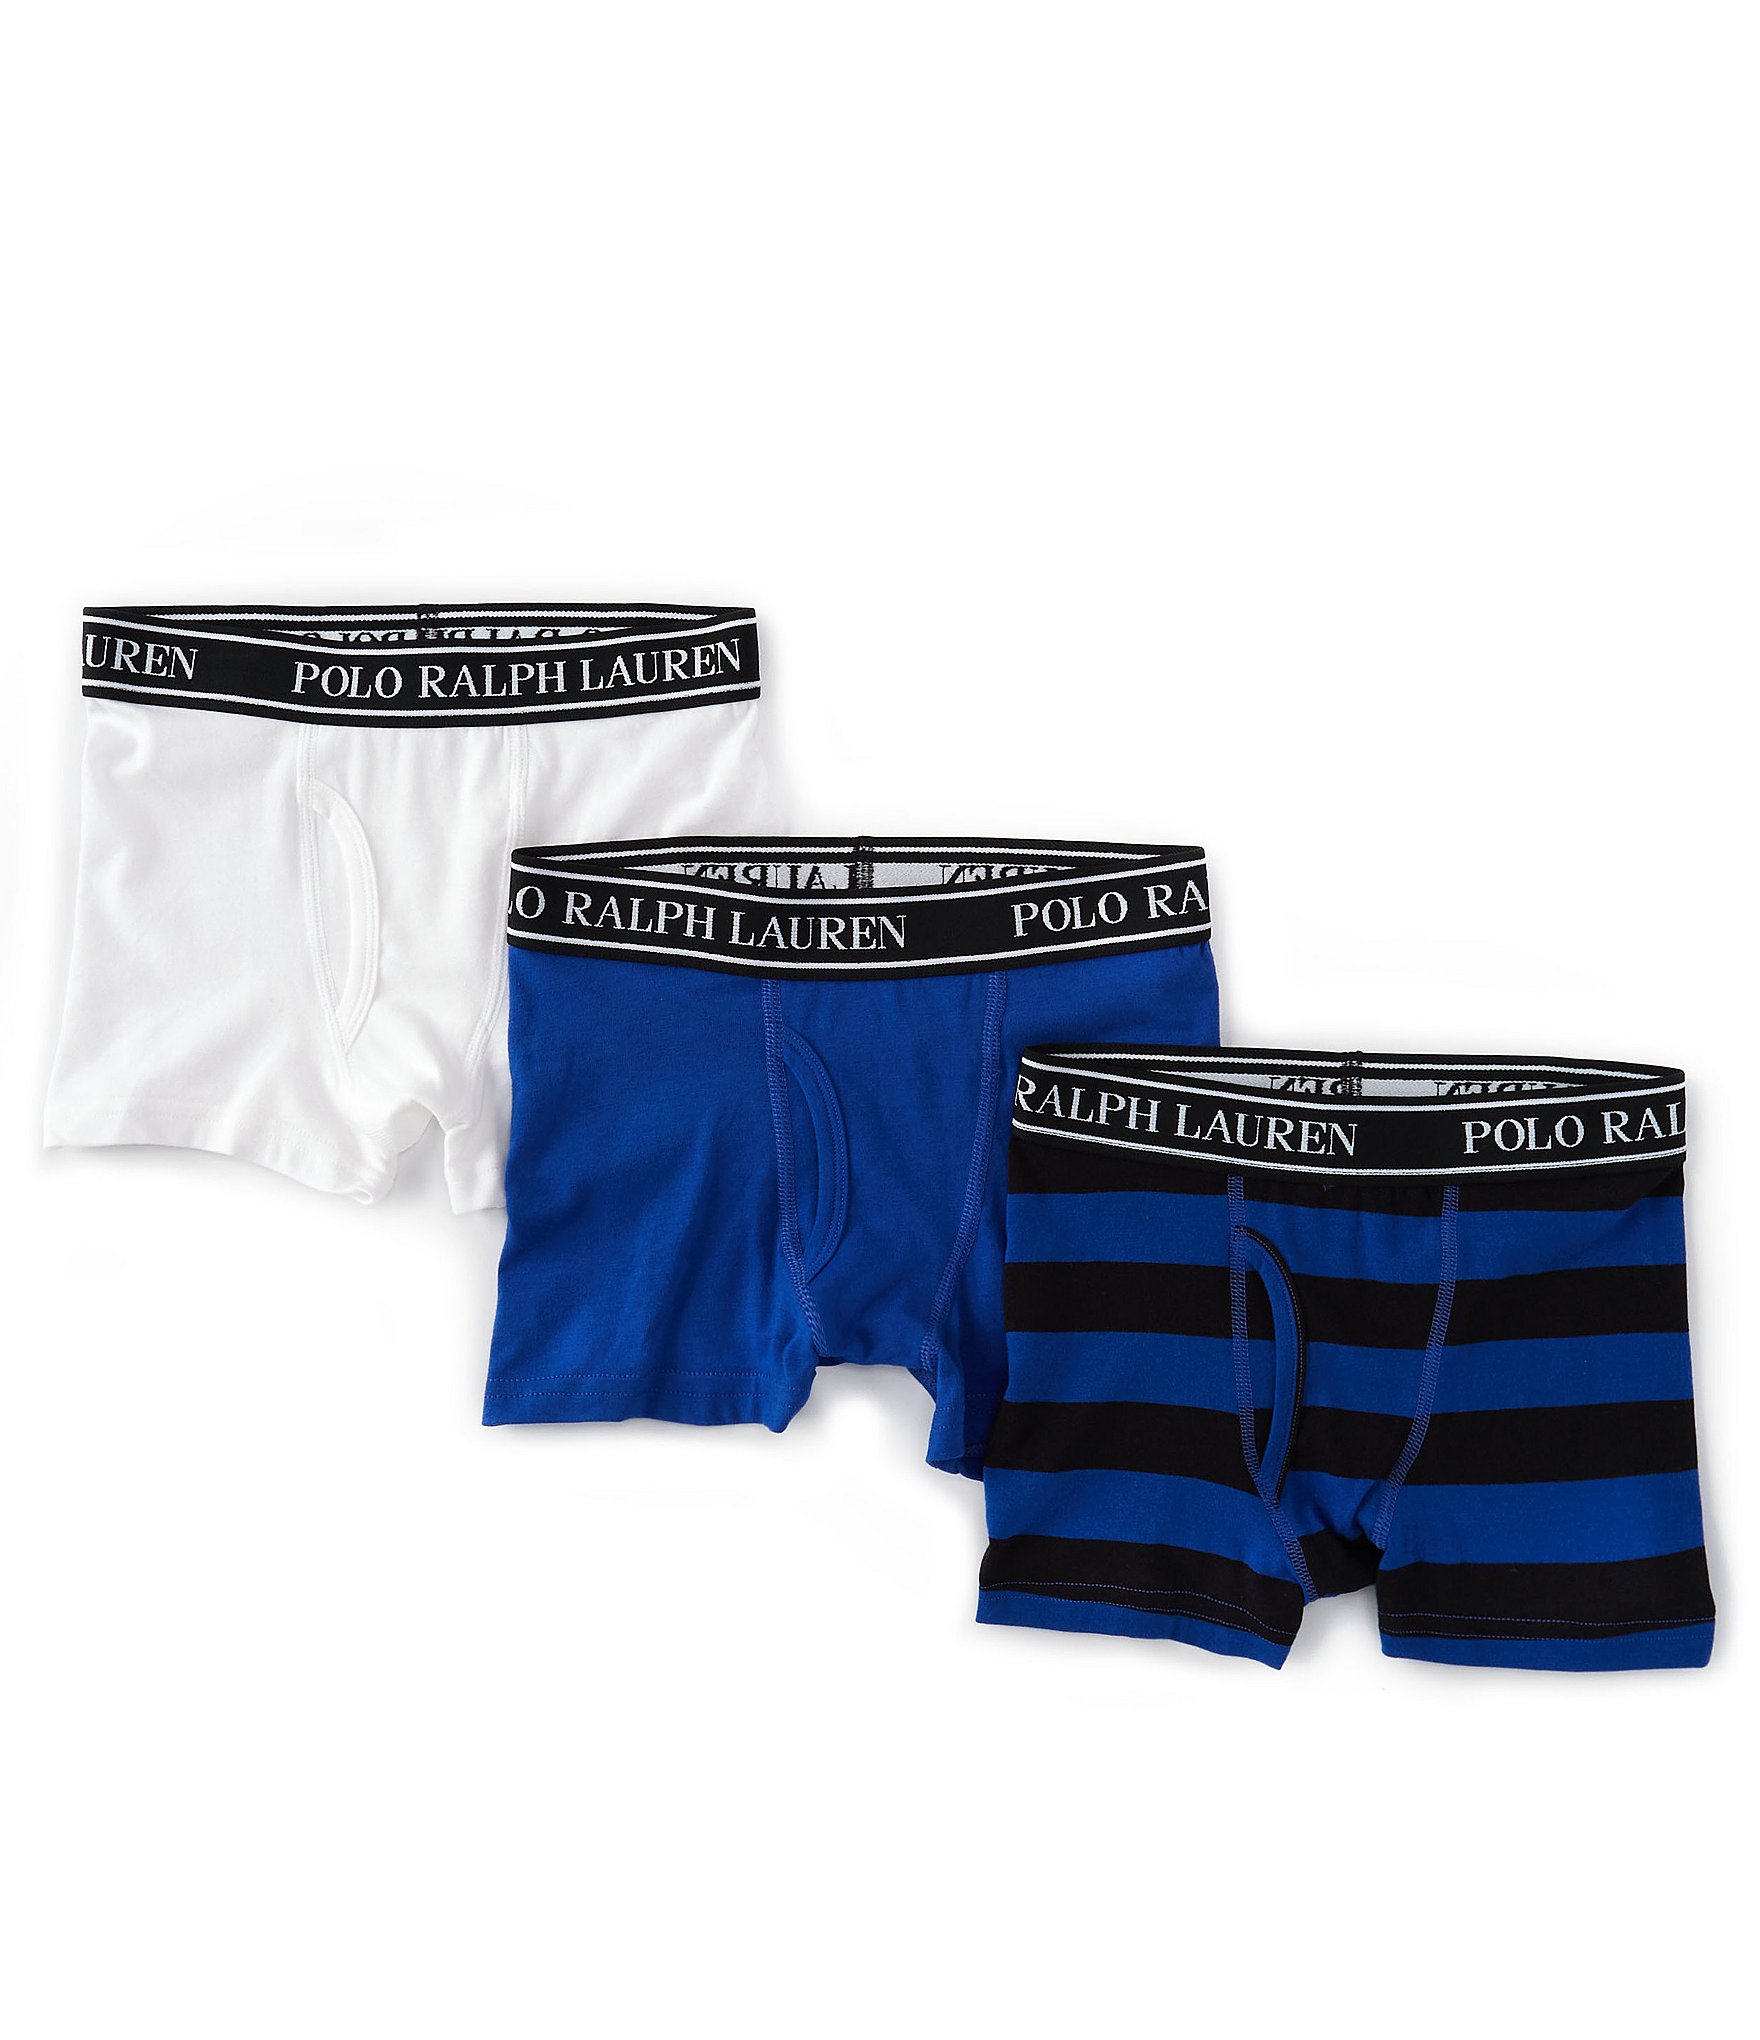 Polo Ralph Lauren 3-Pack Boxers Trunk Boxer Shorts Underwear Trousers  Pantie S